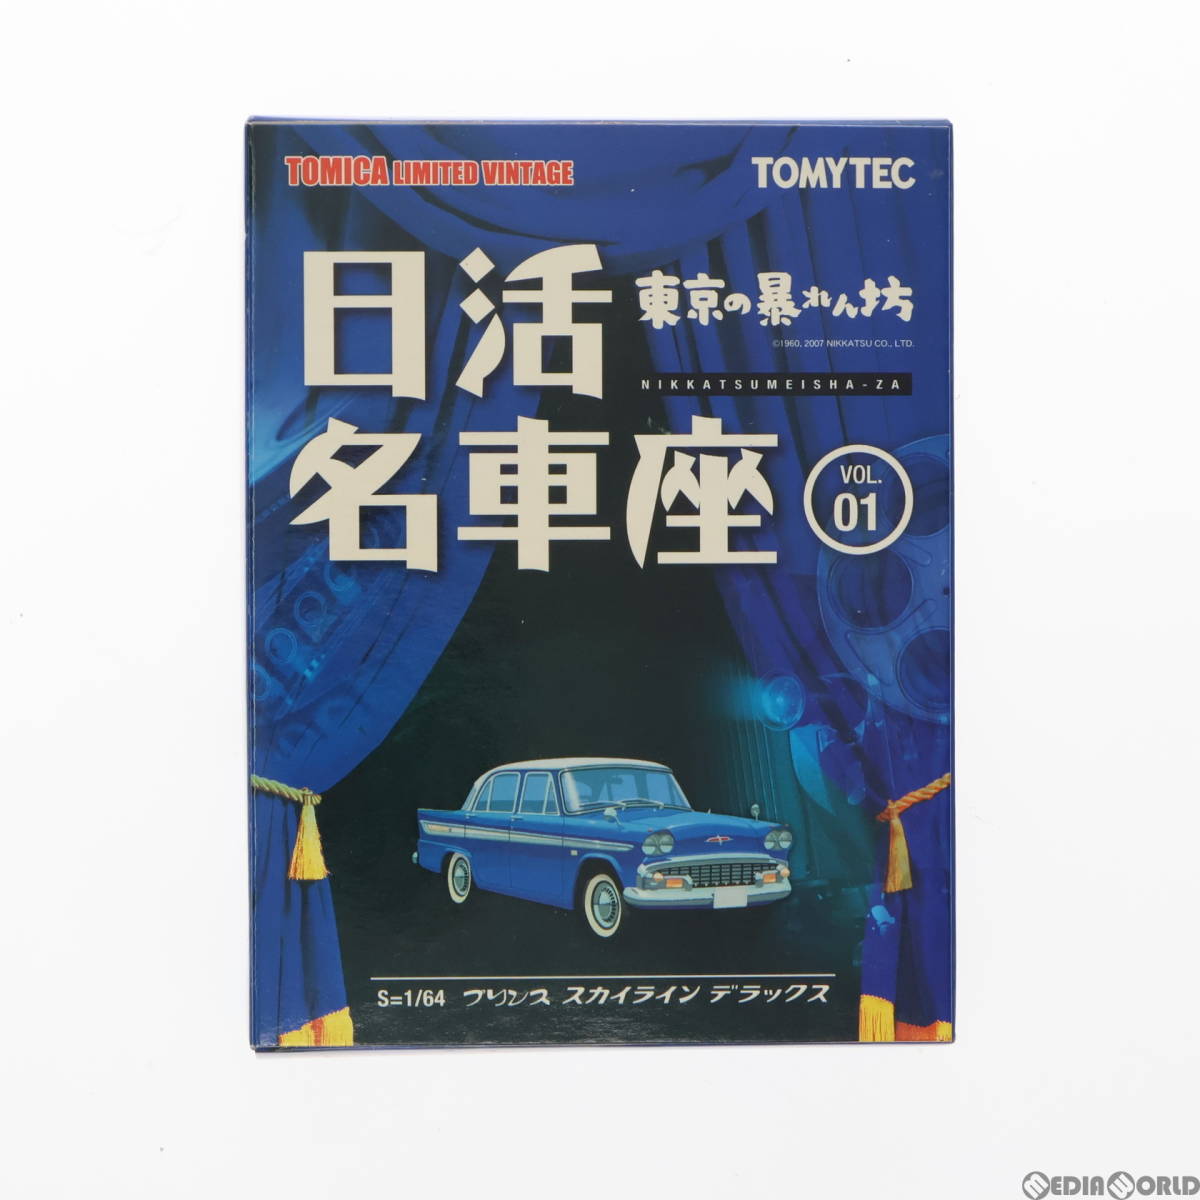 [ б/у ][MDL] Tomica Limited Vintage день . известная машина сиденье VOL.1 Prince Skyline Deluxe ( голубой × белый ) 1/64 конечный продукт миникар 